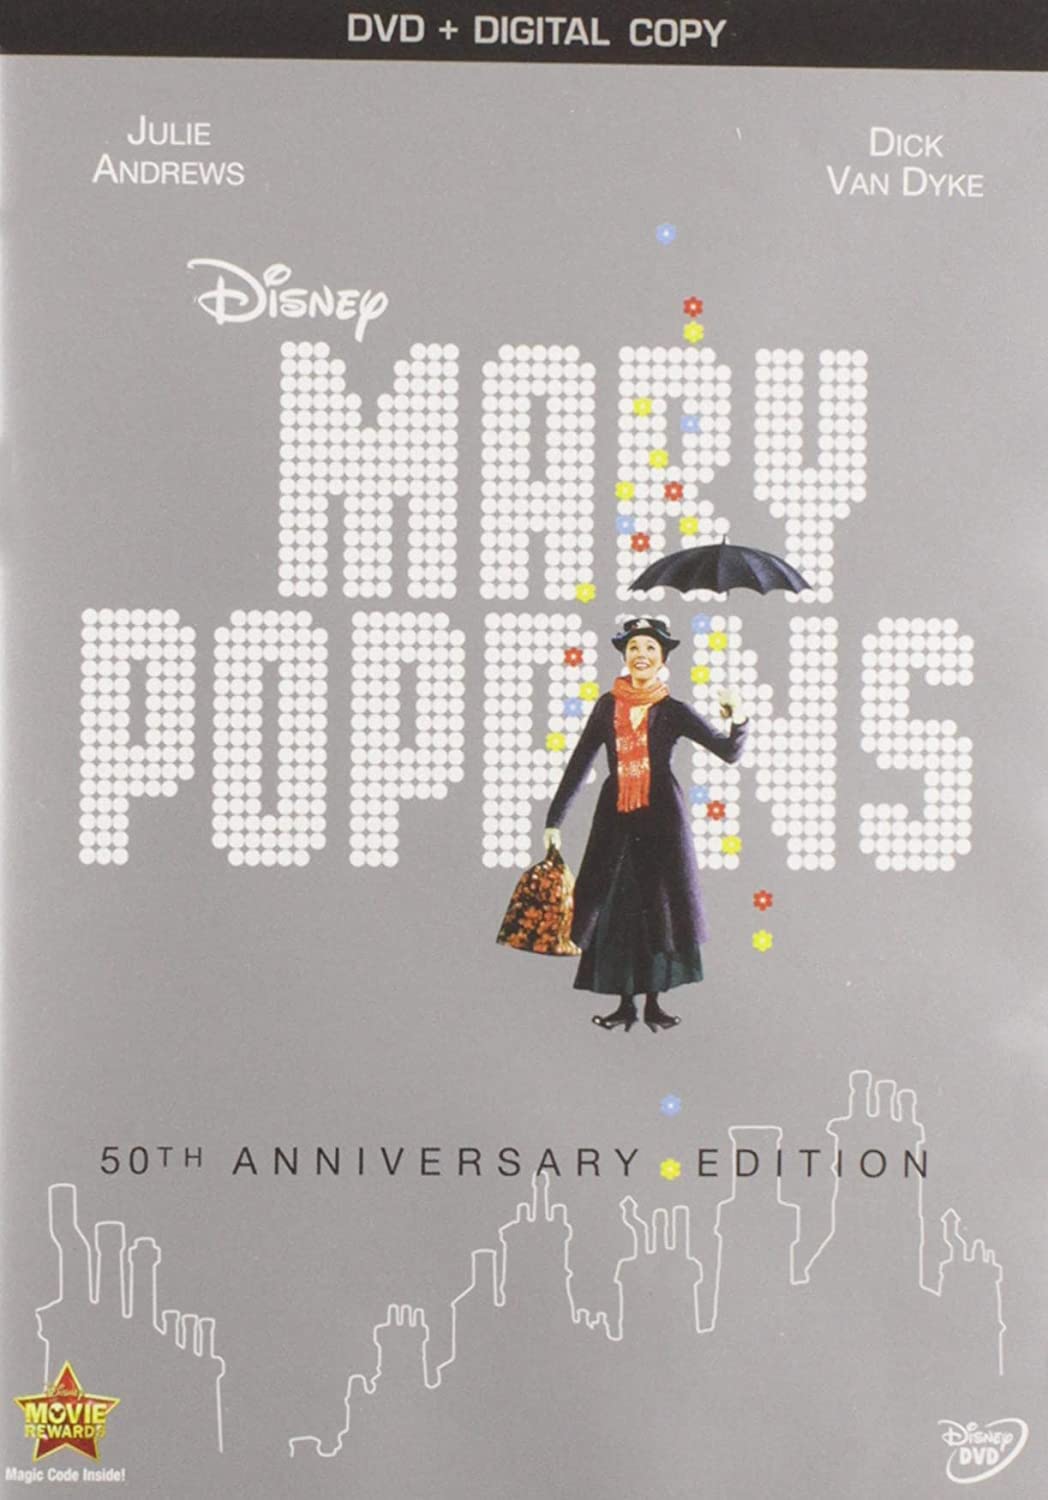 Mary Poppins - DarksideRecords